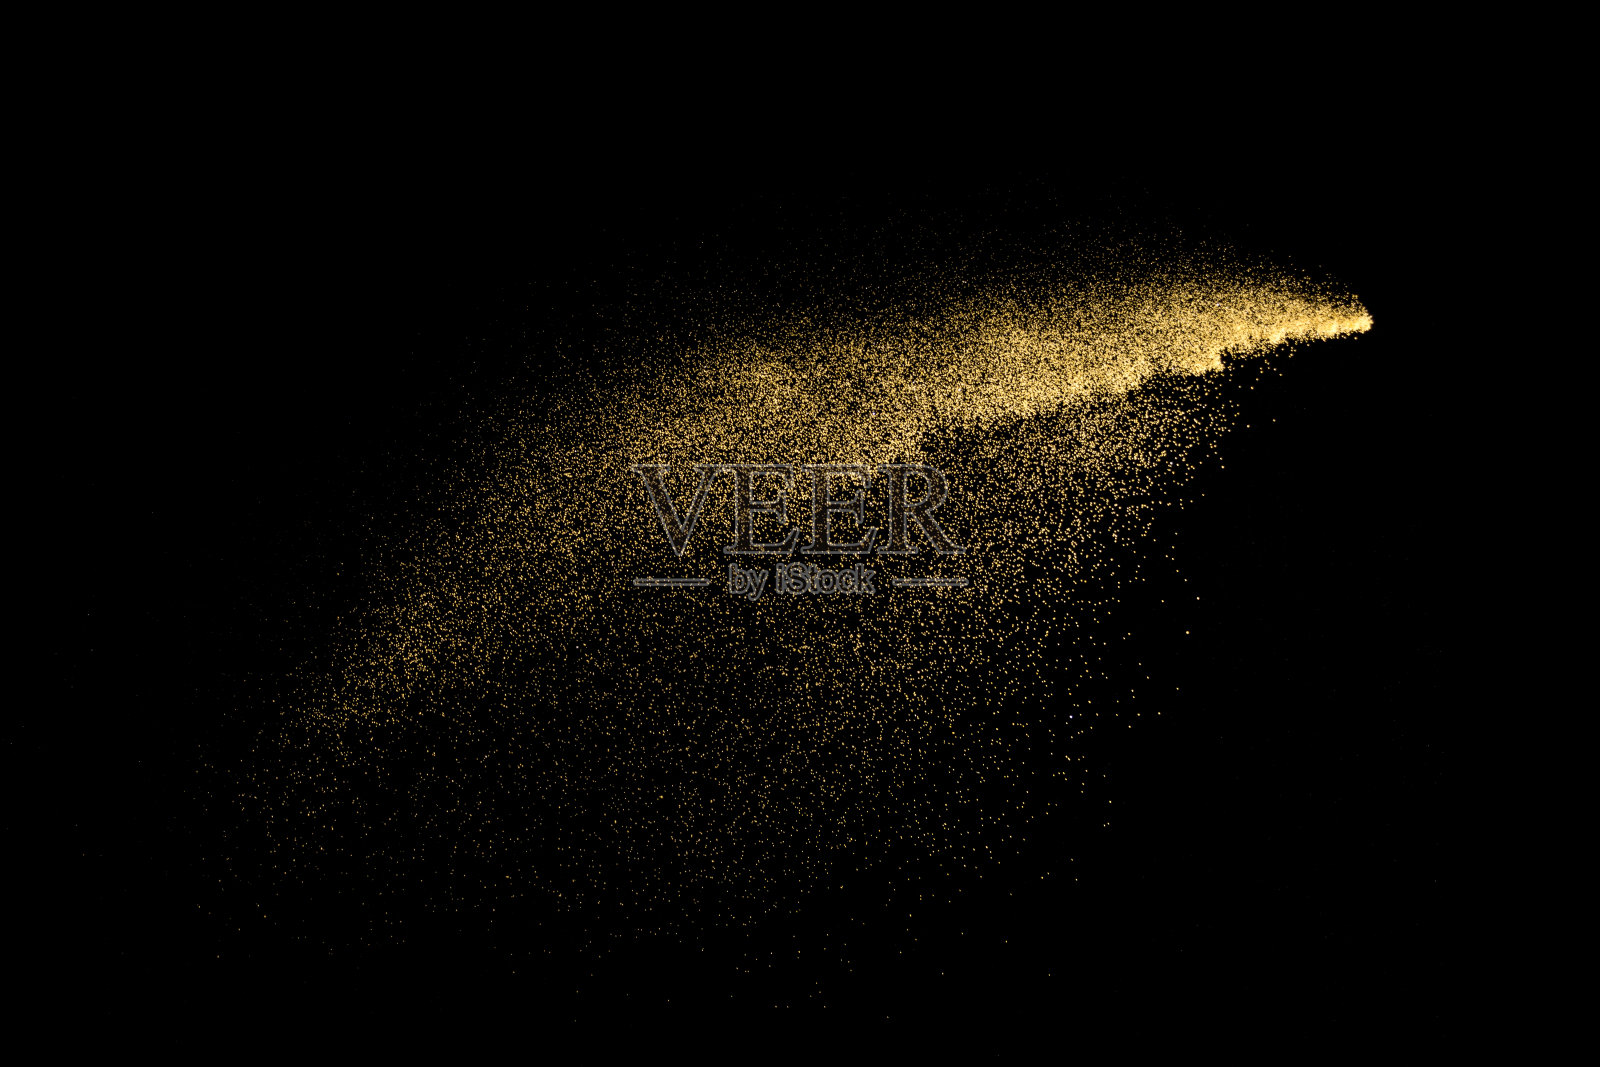 黑色背景上发生黄沙爆炸。抽象的沙子云。黄色的沙子在黑暗的背景上飞溅。桑迪飞在空中波浪。照片摄影图片